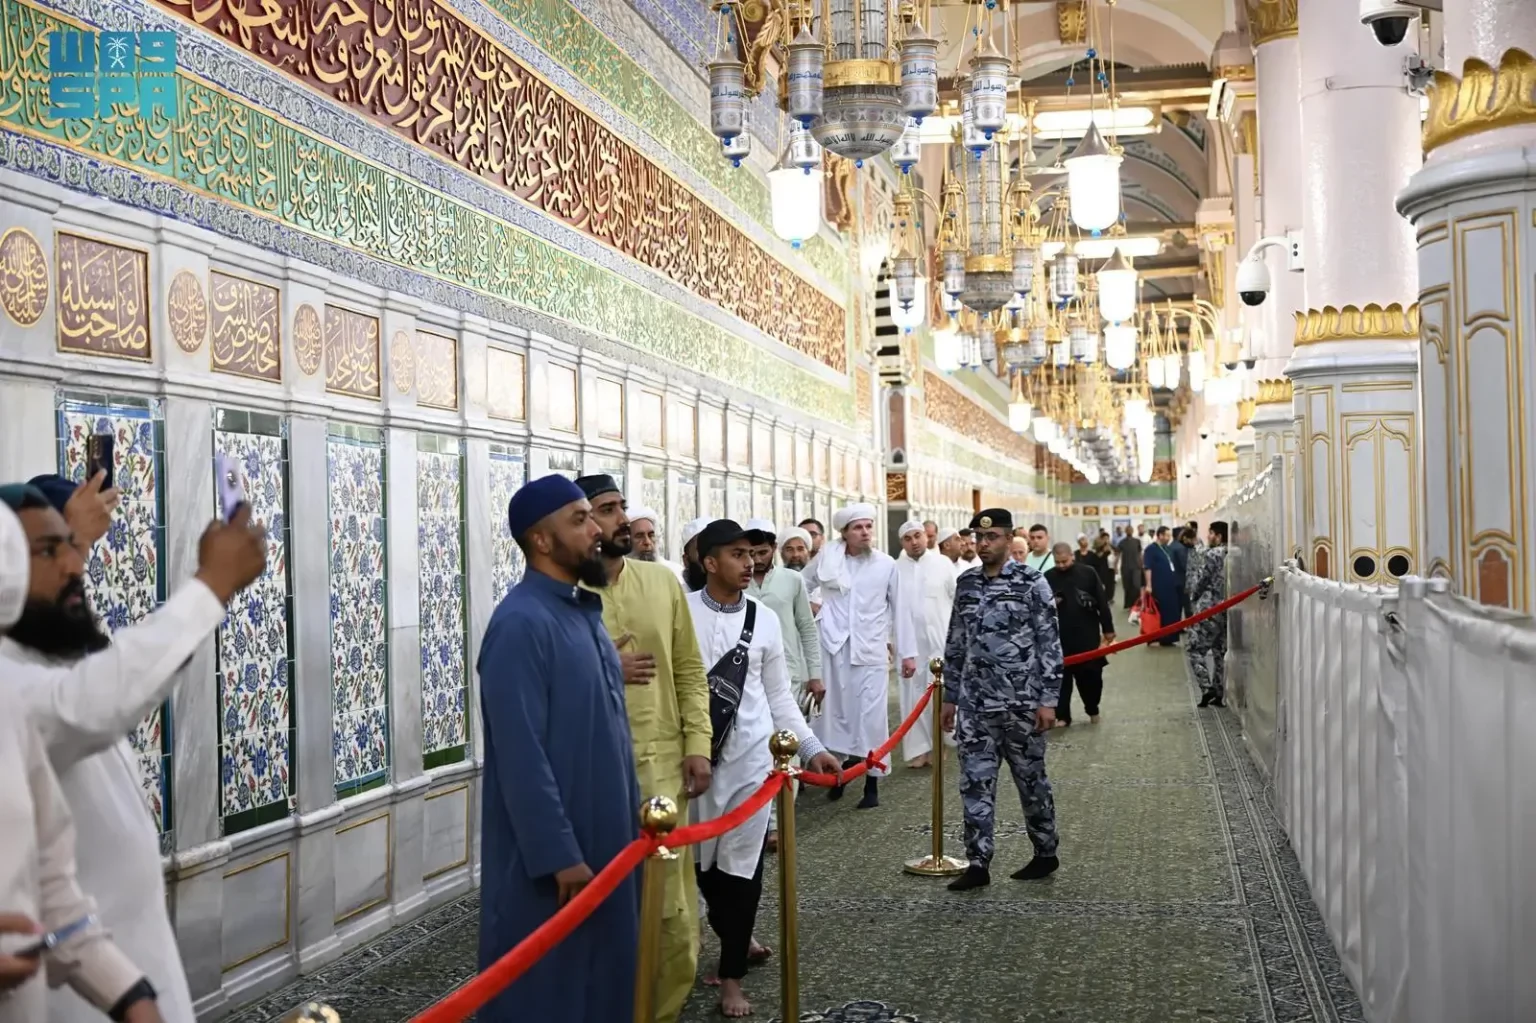 جهود إنسانية وتنظيمية لأفراد الأمن في المسجد النبوي لتمكين المصلين من أداء العبادات